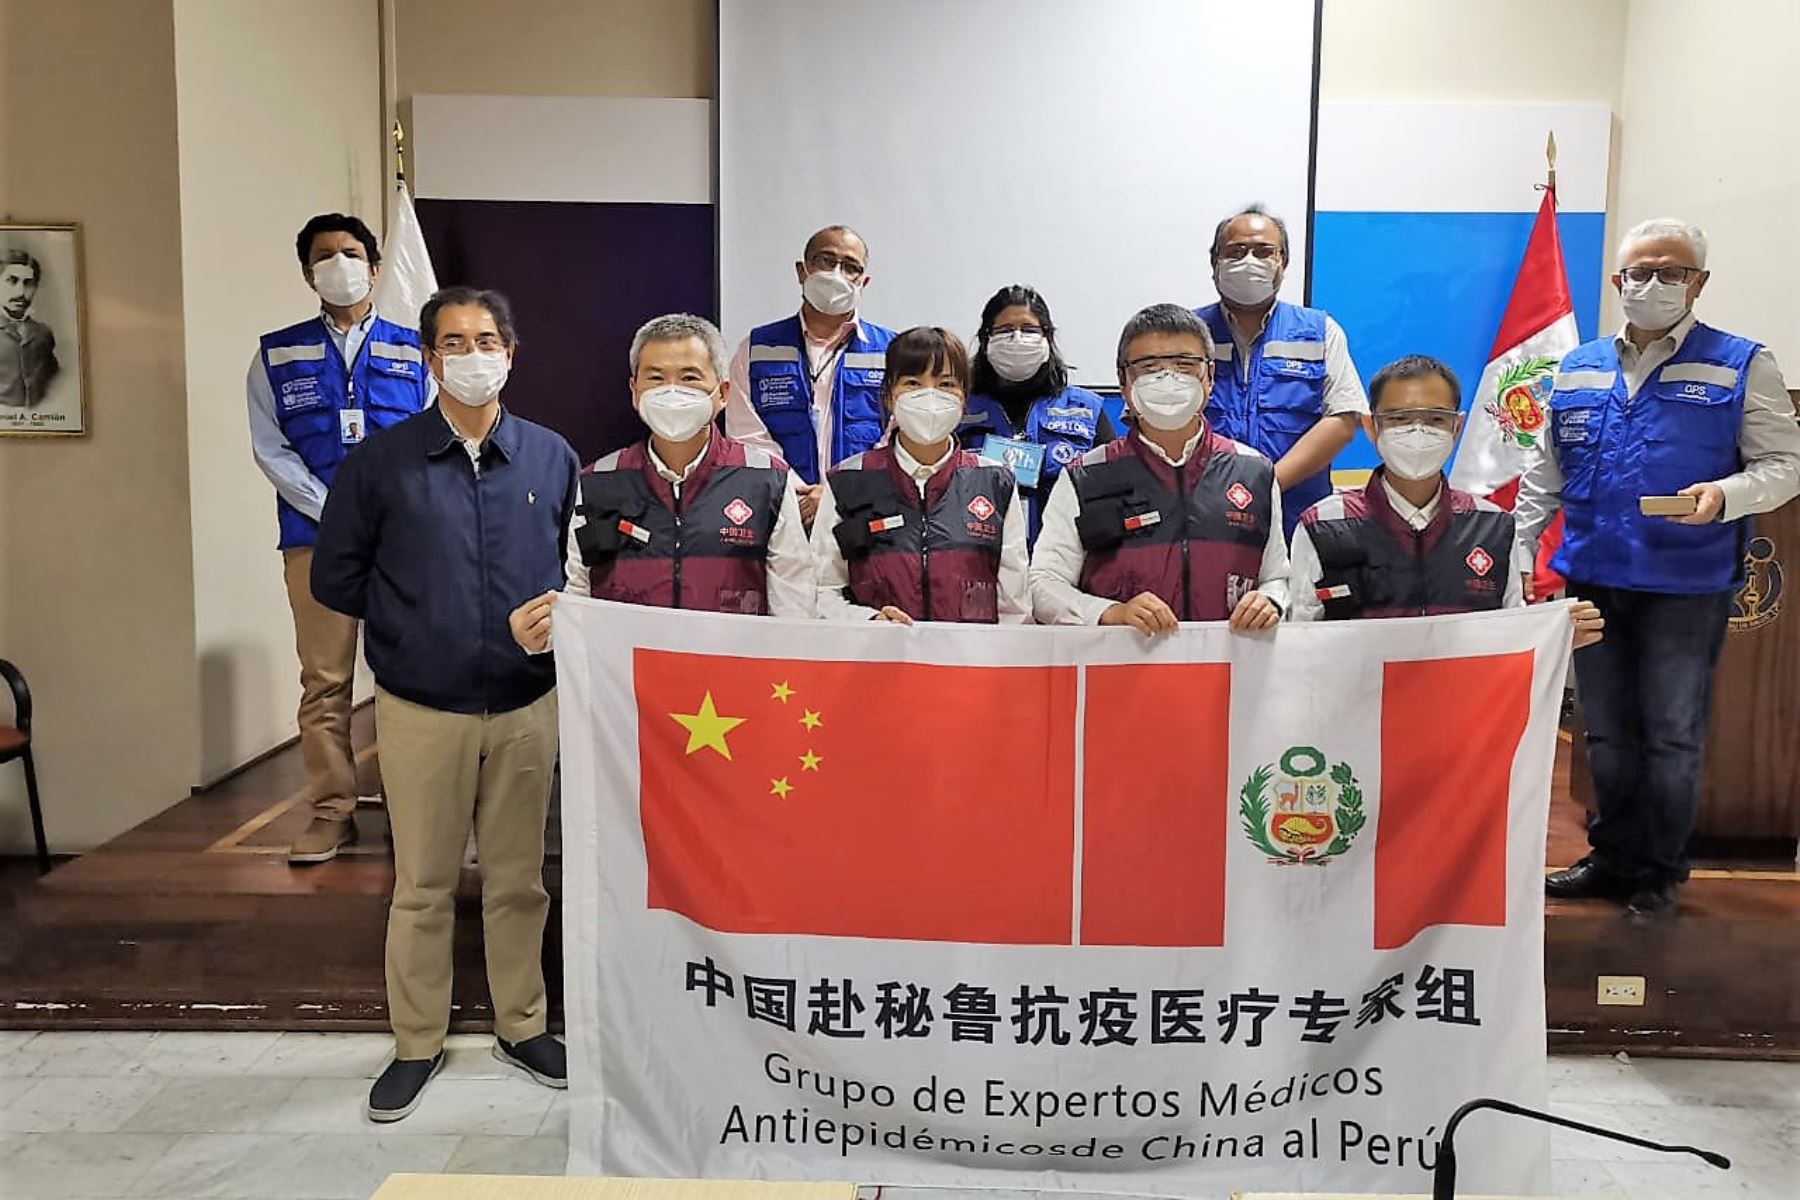 Médicos chinos especialistas en epidemias visitan el Perú en medio del estado de emergencia nacional por el coronavirus.